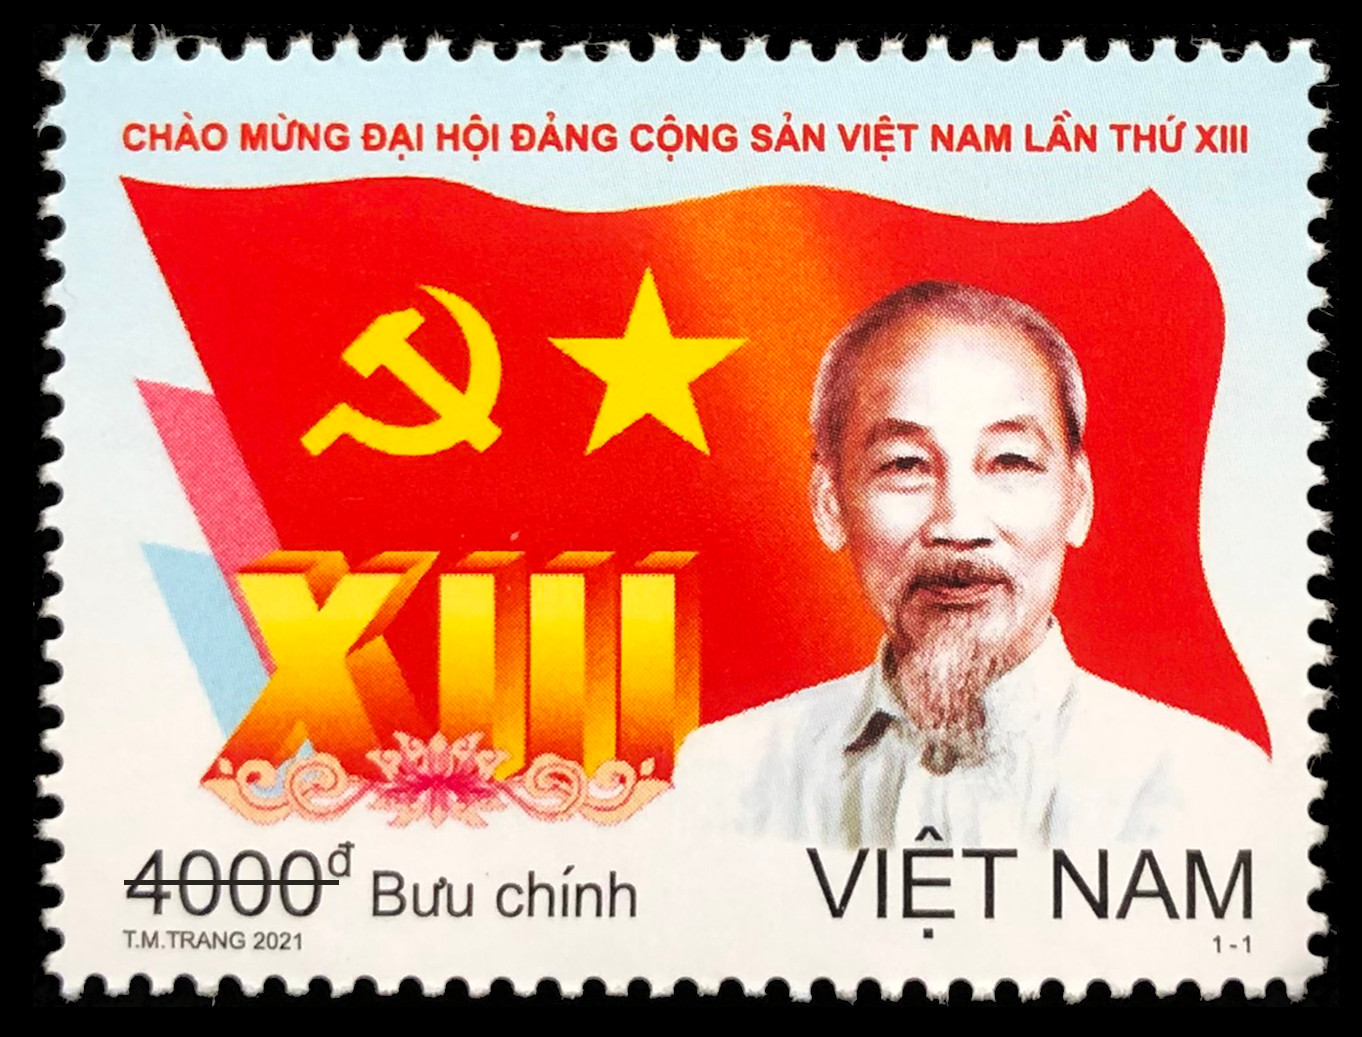 Phát hành đặc biệt bộ tem bưu chính chào mừng Đại hội Đảng lần thứ XIII - Ảnh 3.